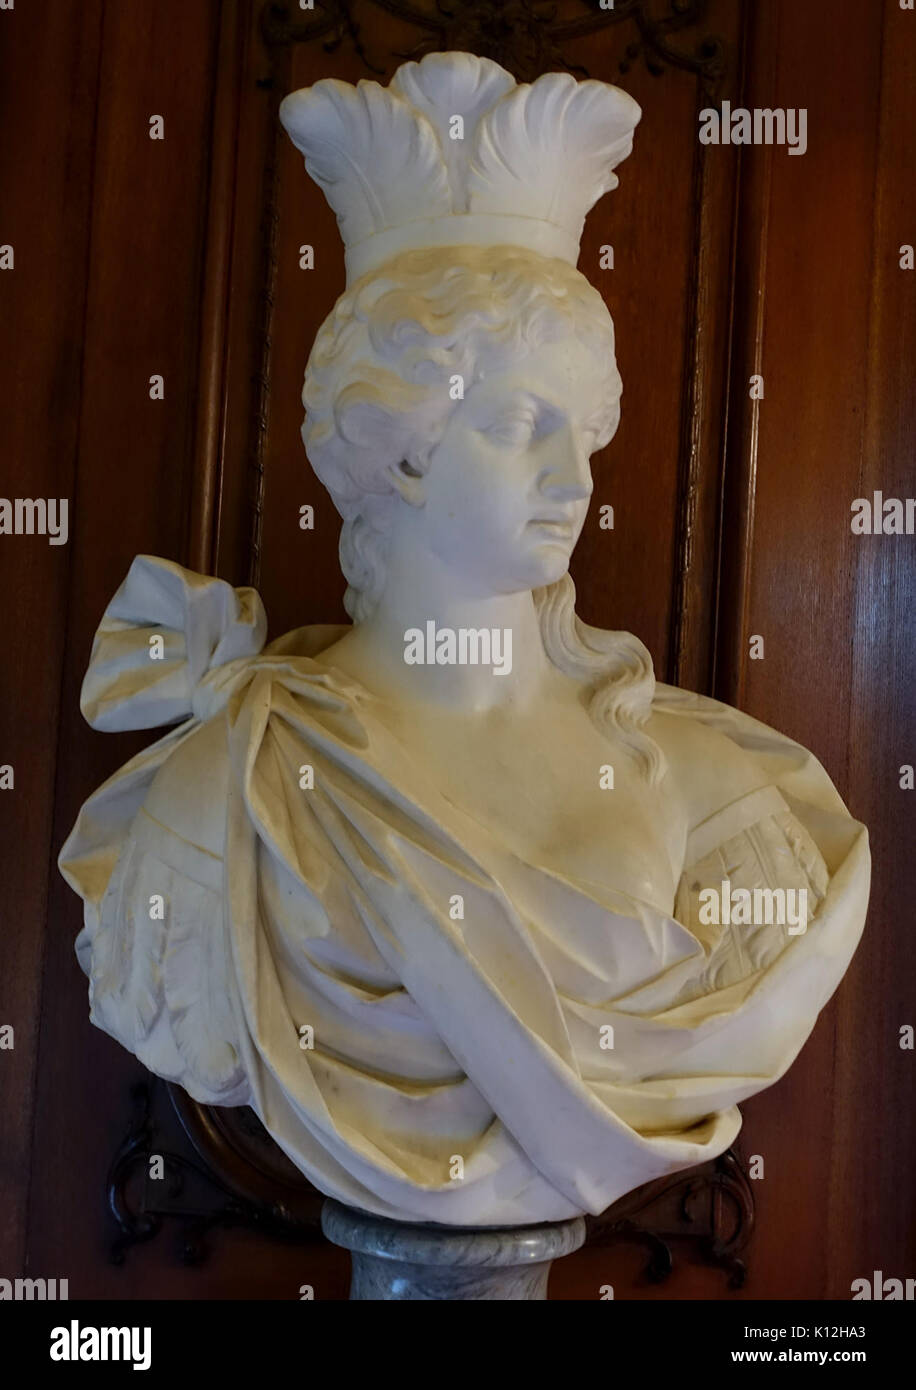 Amerika, Bildhauer unbekannt, Frankreich, 1700 1800 Waddesdon Manor Buckinghamshire, England DSC07637 Stockfoto